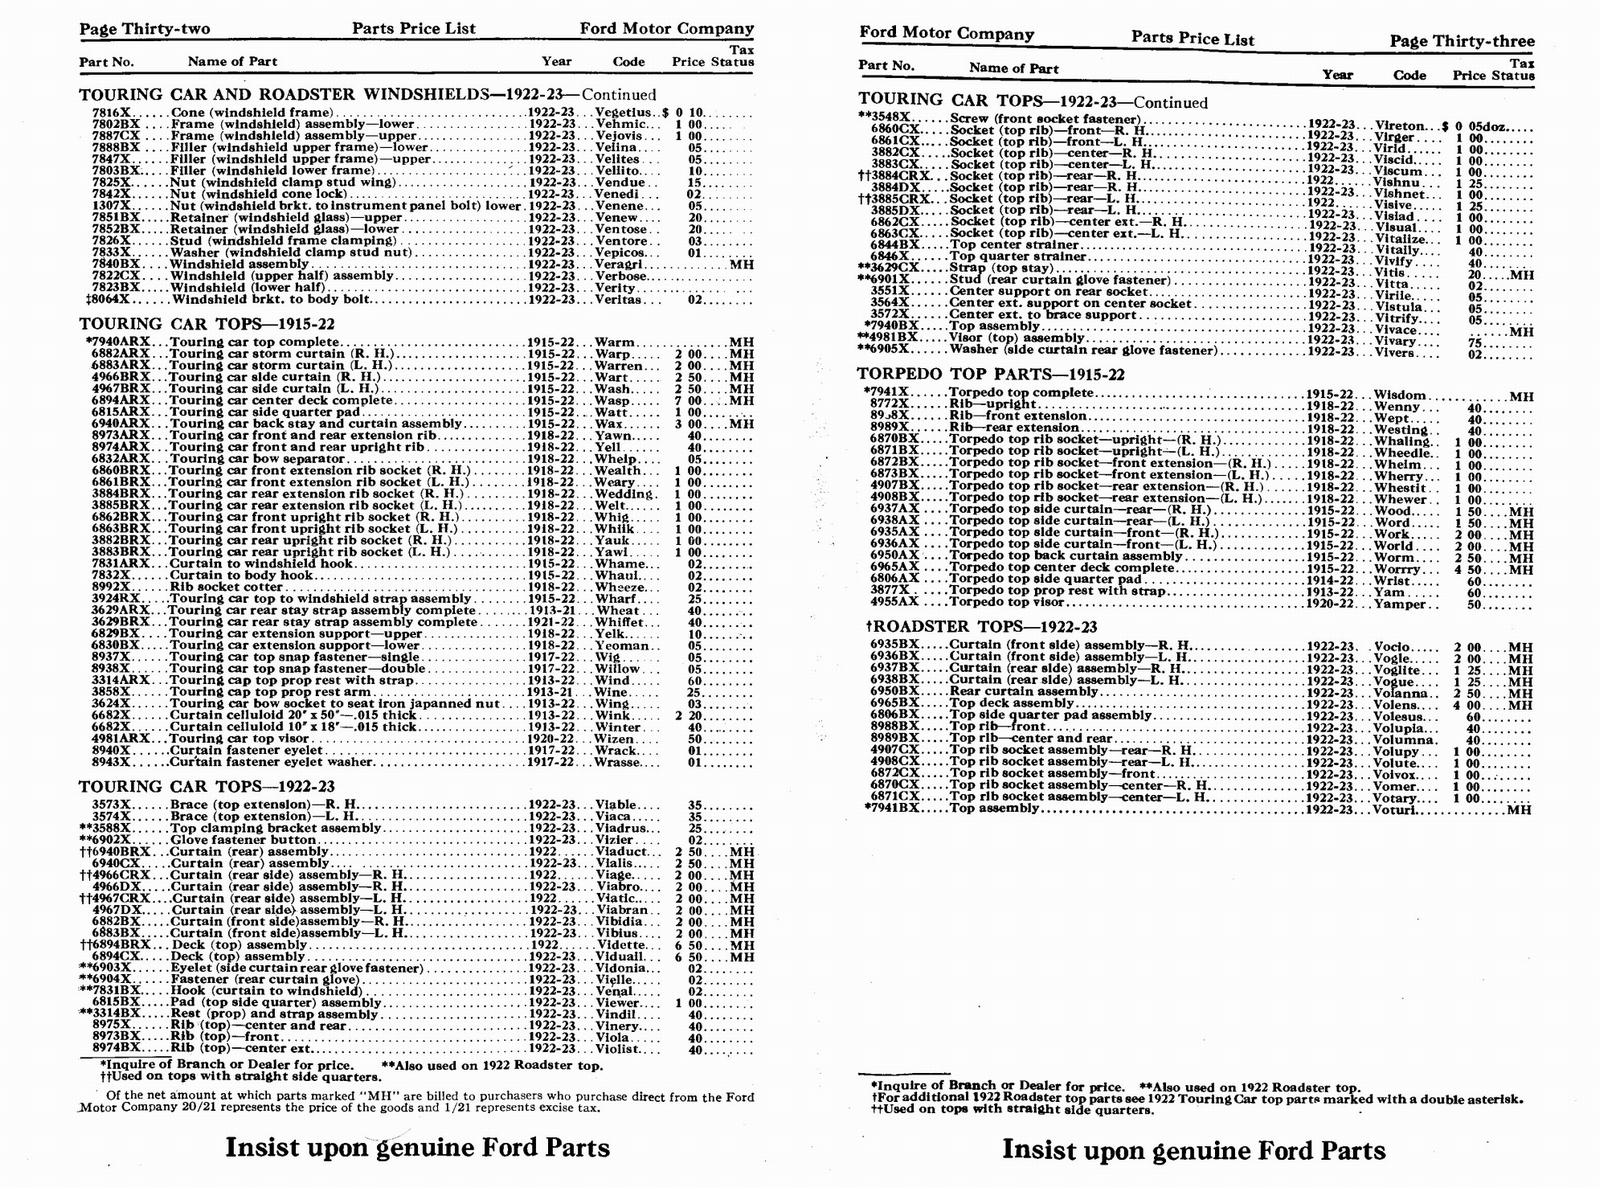 n_1923 Ford Price List-32-33.jpg